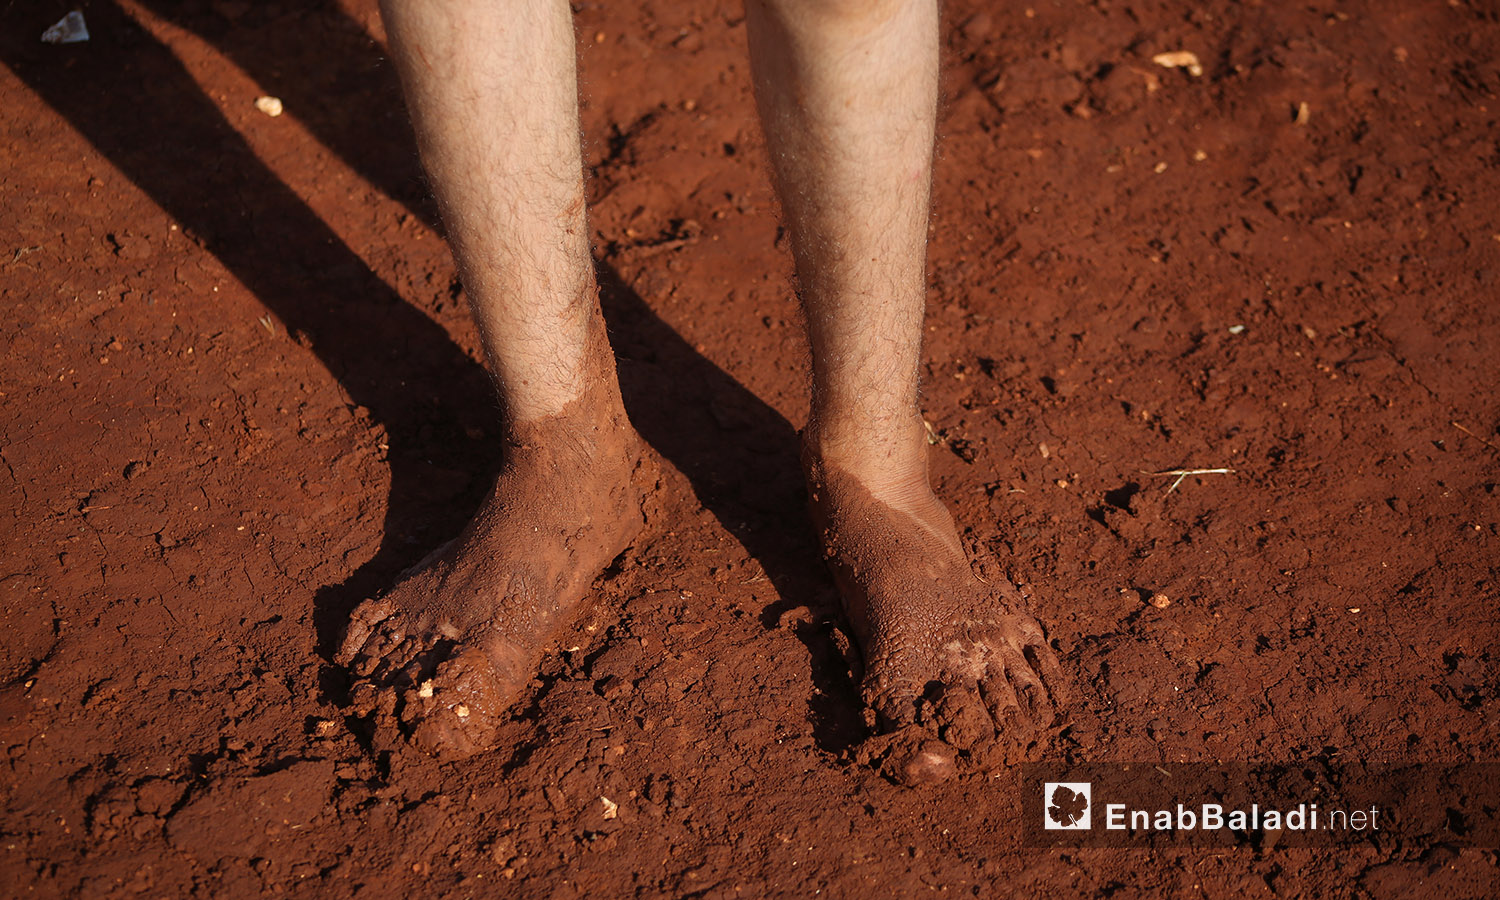 قدما طفل مغمورتان بالوحل بعد العاصفة المطرية التي ضربت مخيم "سهل الخير" في كفربني بريف إدلب الشمالي - 19 حزيران 2020 (عنب بلدي/يوسف غريبي)